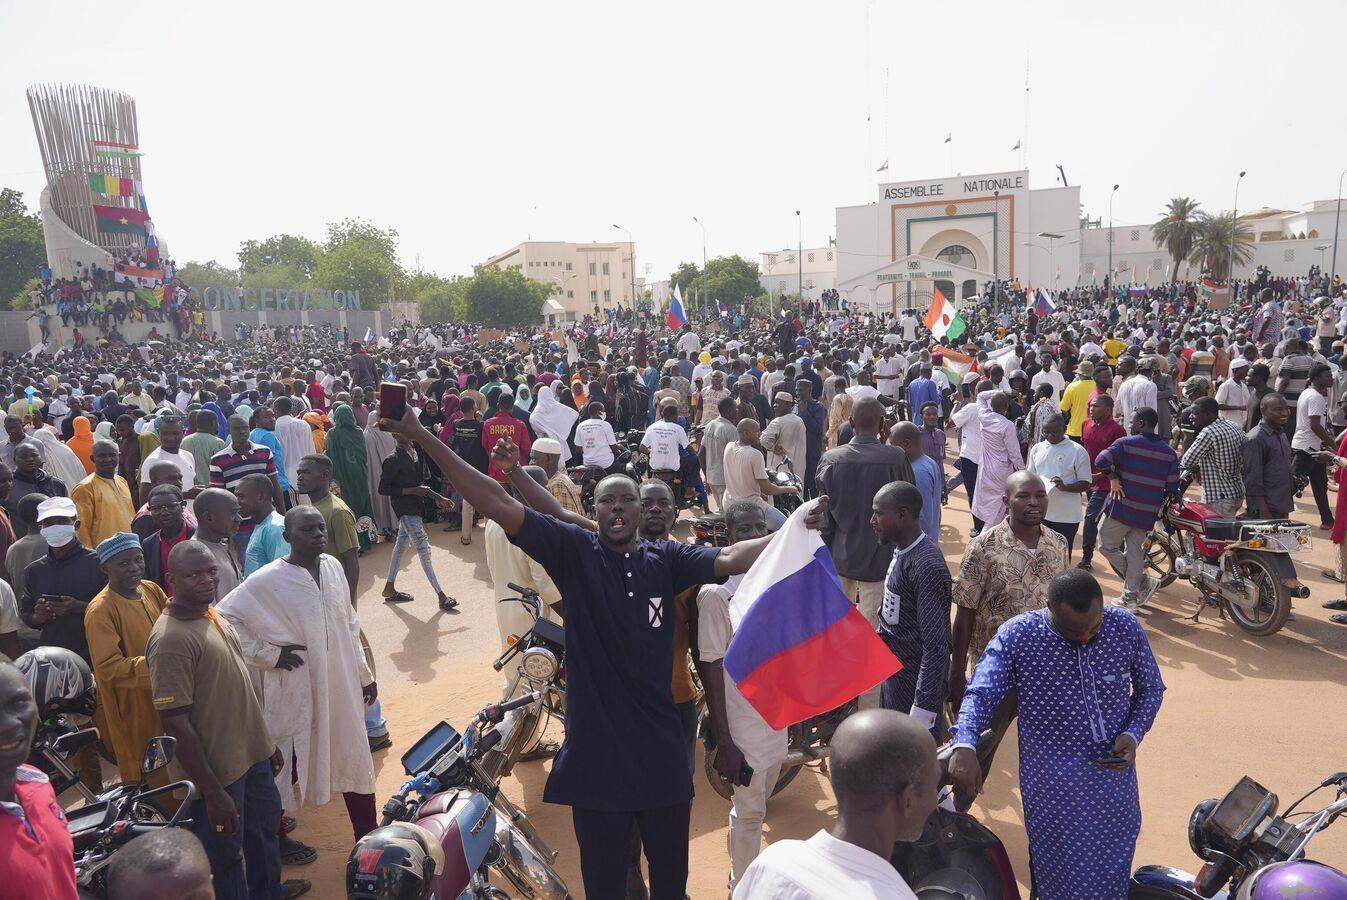 Des spécialistes antiterroristes russes au Niger: "un signal d'espoir et de confiance"